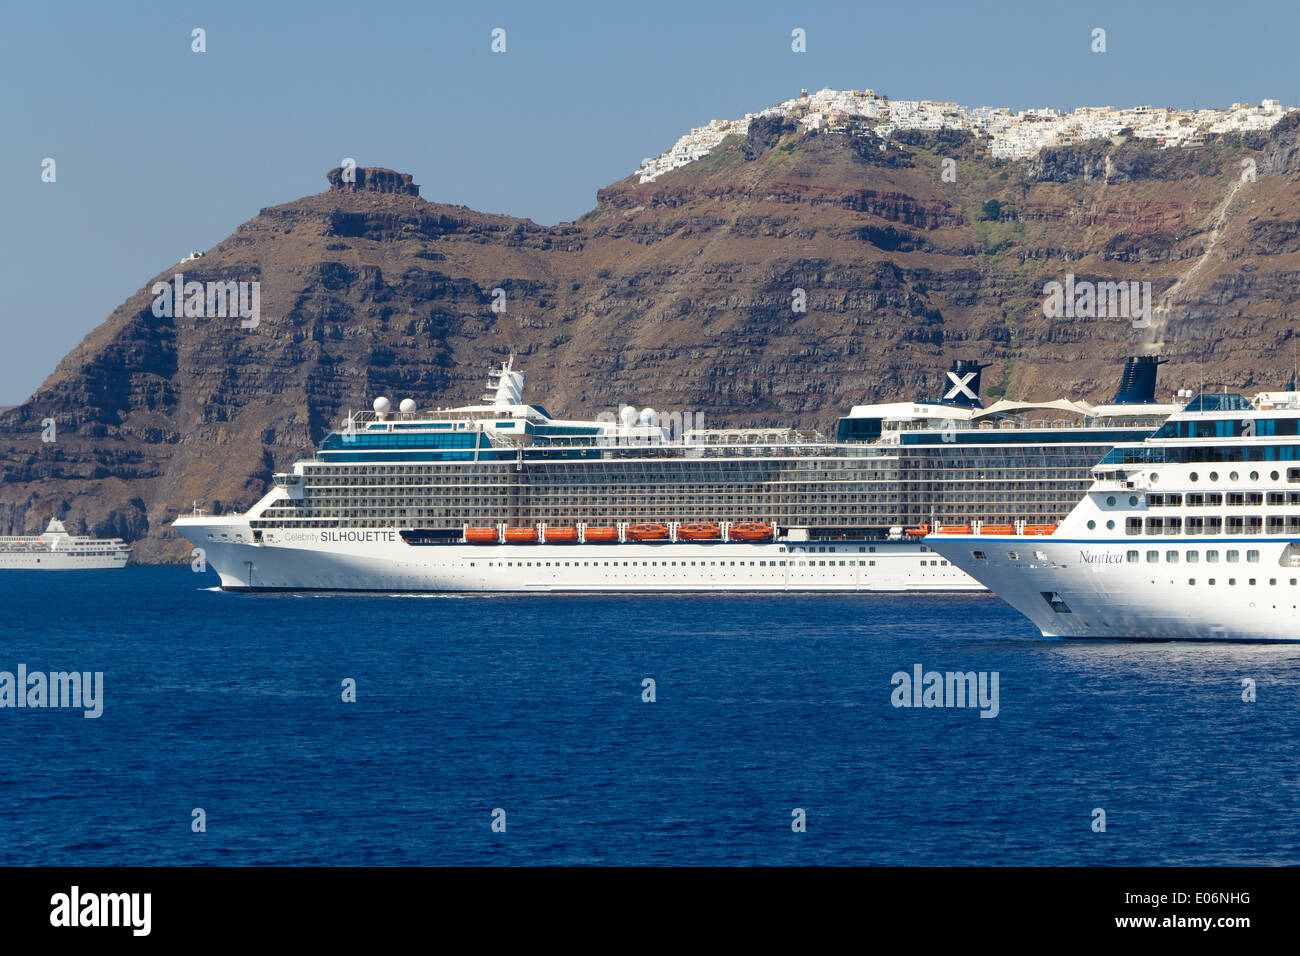 Les navires de croisière de luxe dans l'île de Santorin, Grèce Banque D'Images